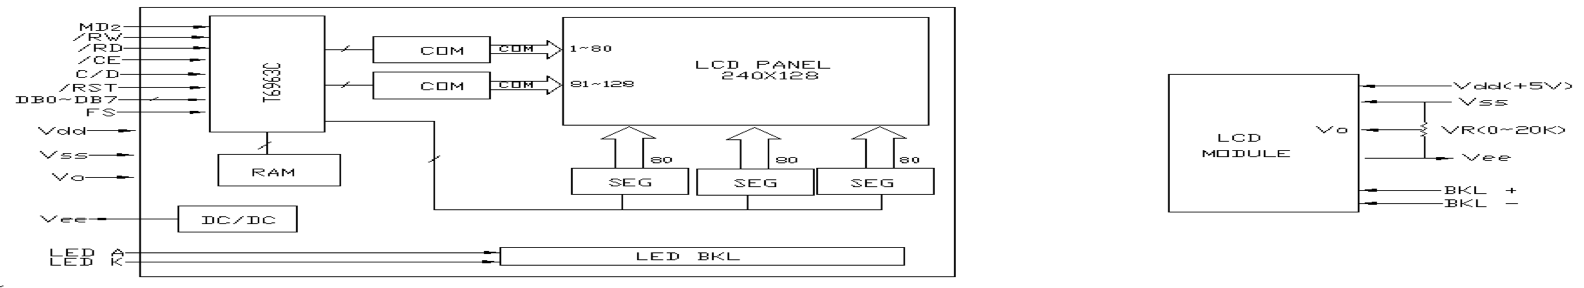 PGM240128C-Block Diagram